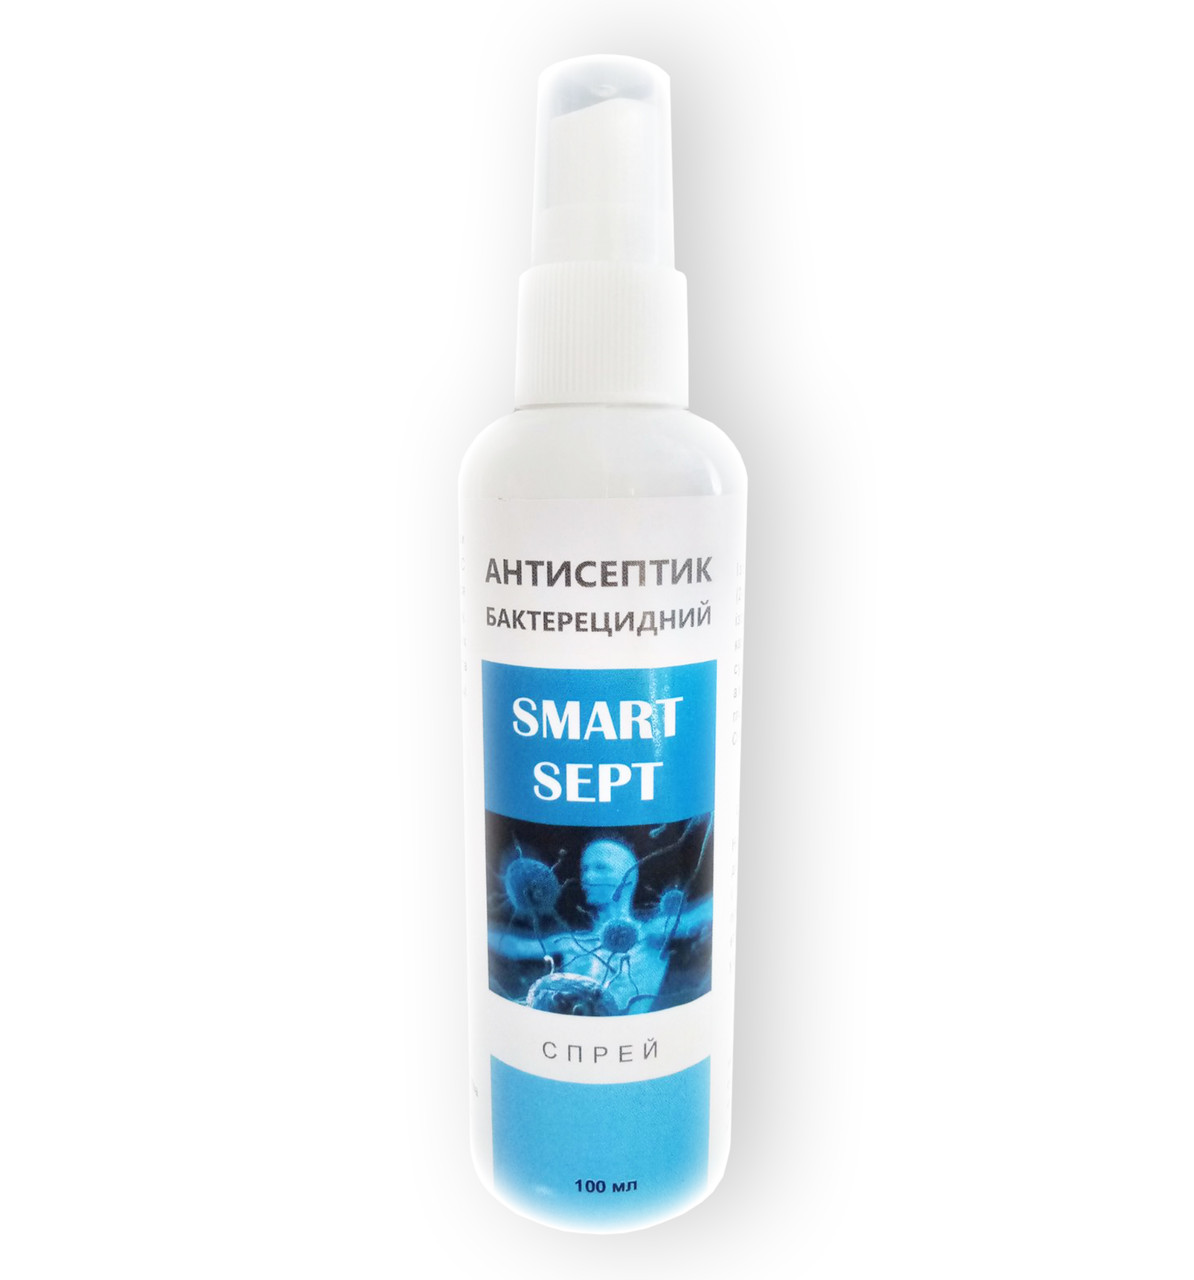 SMART SEPT - Спрей антисептичний бактеріцидний (Смарт Септ) 100 мл